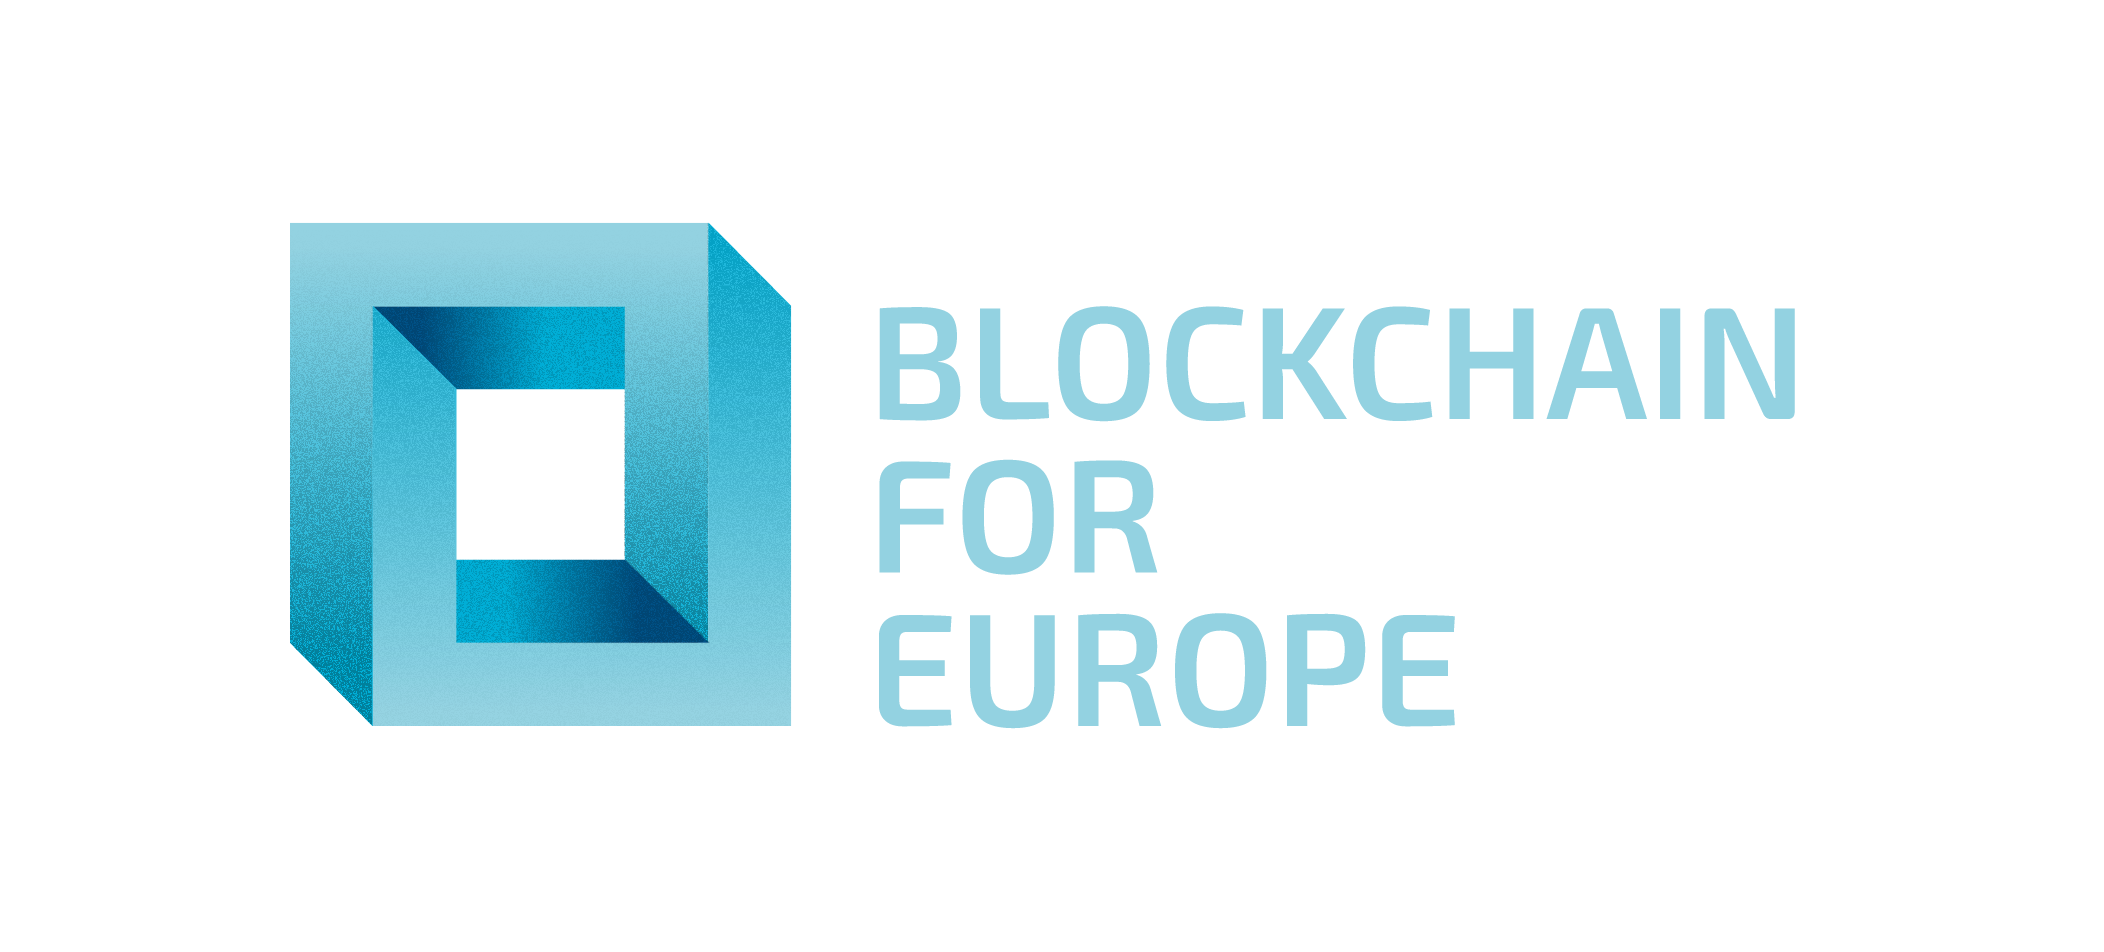 Blockchain for Europe